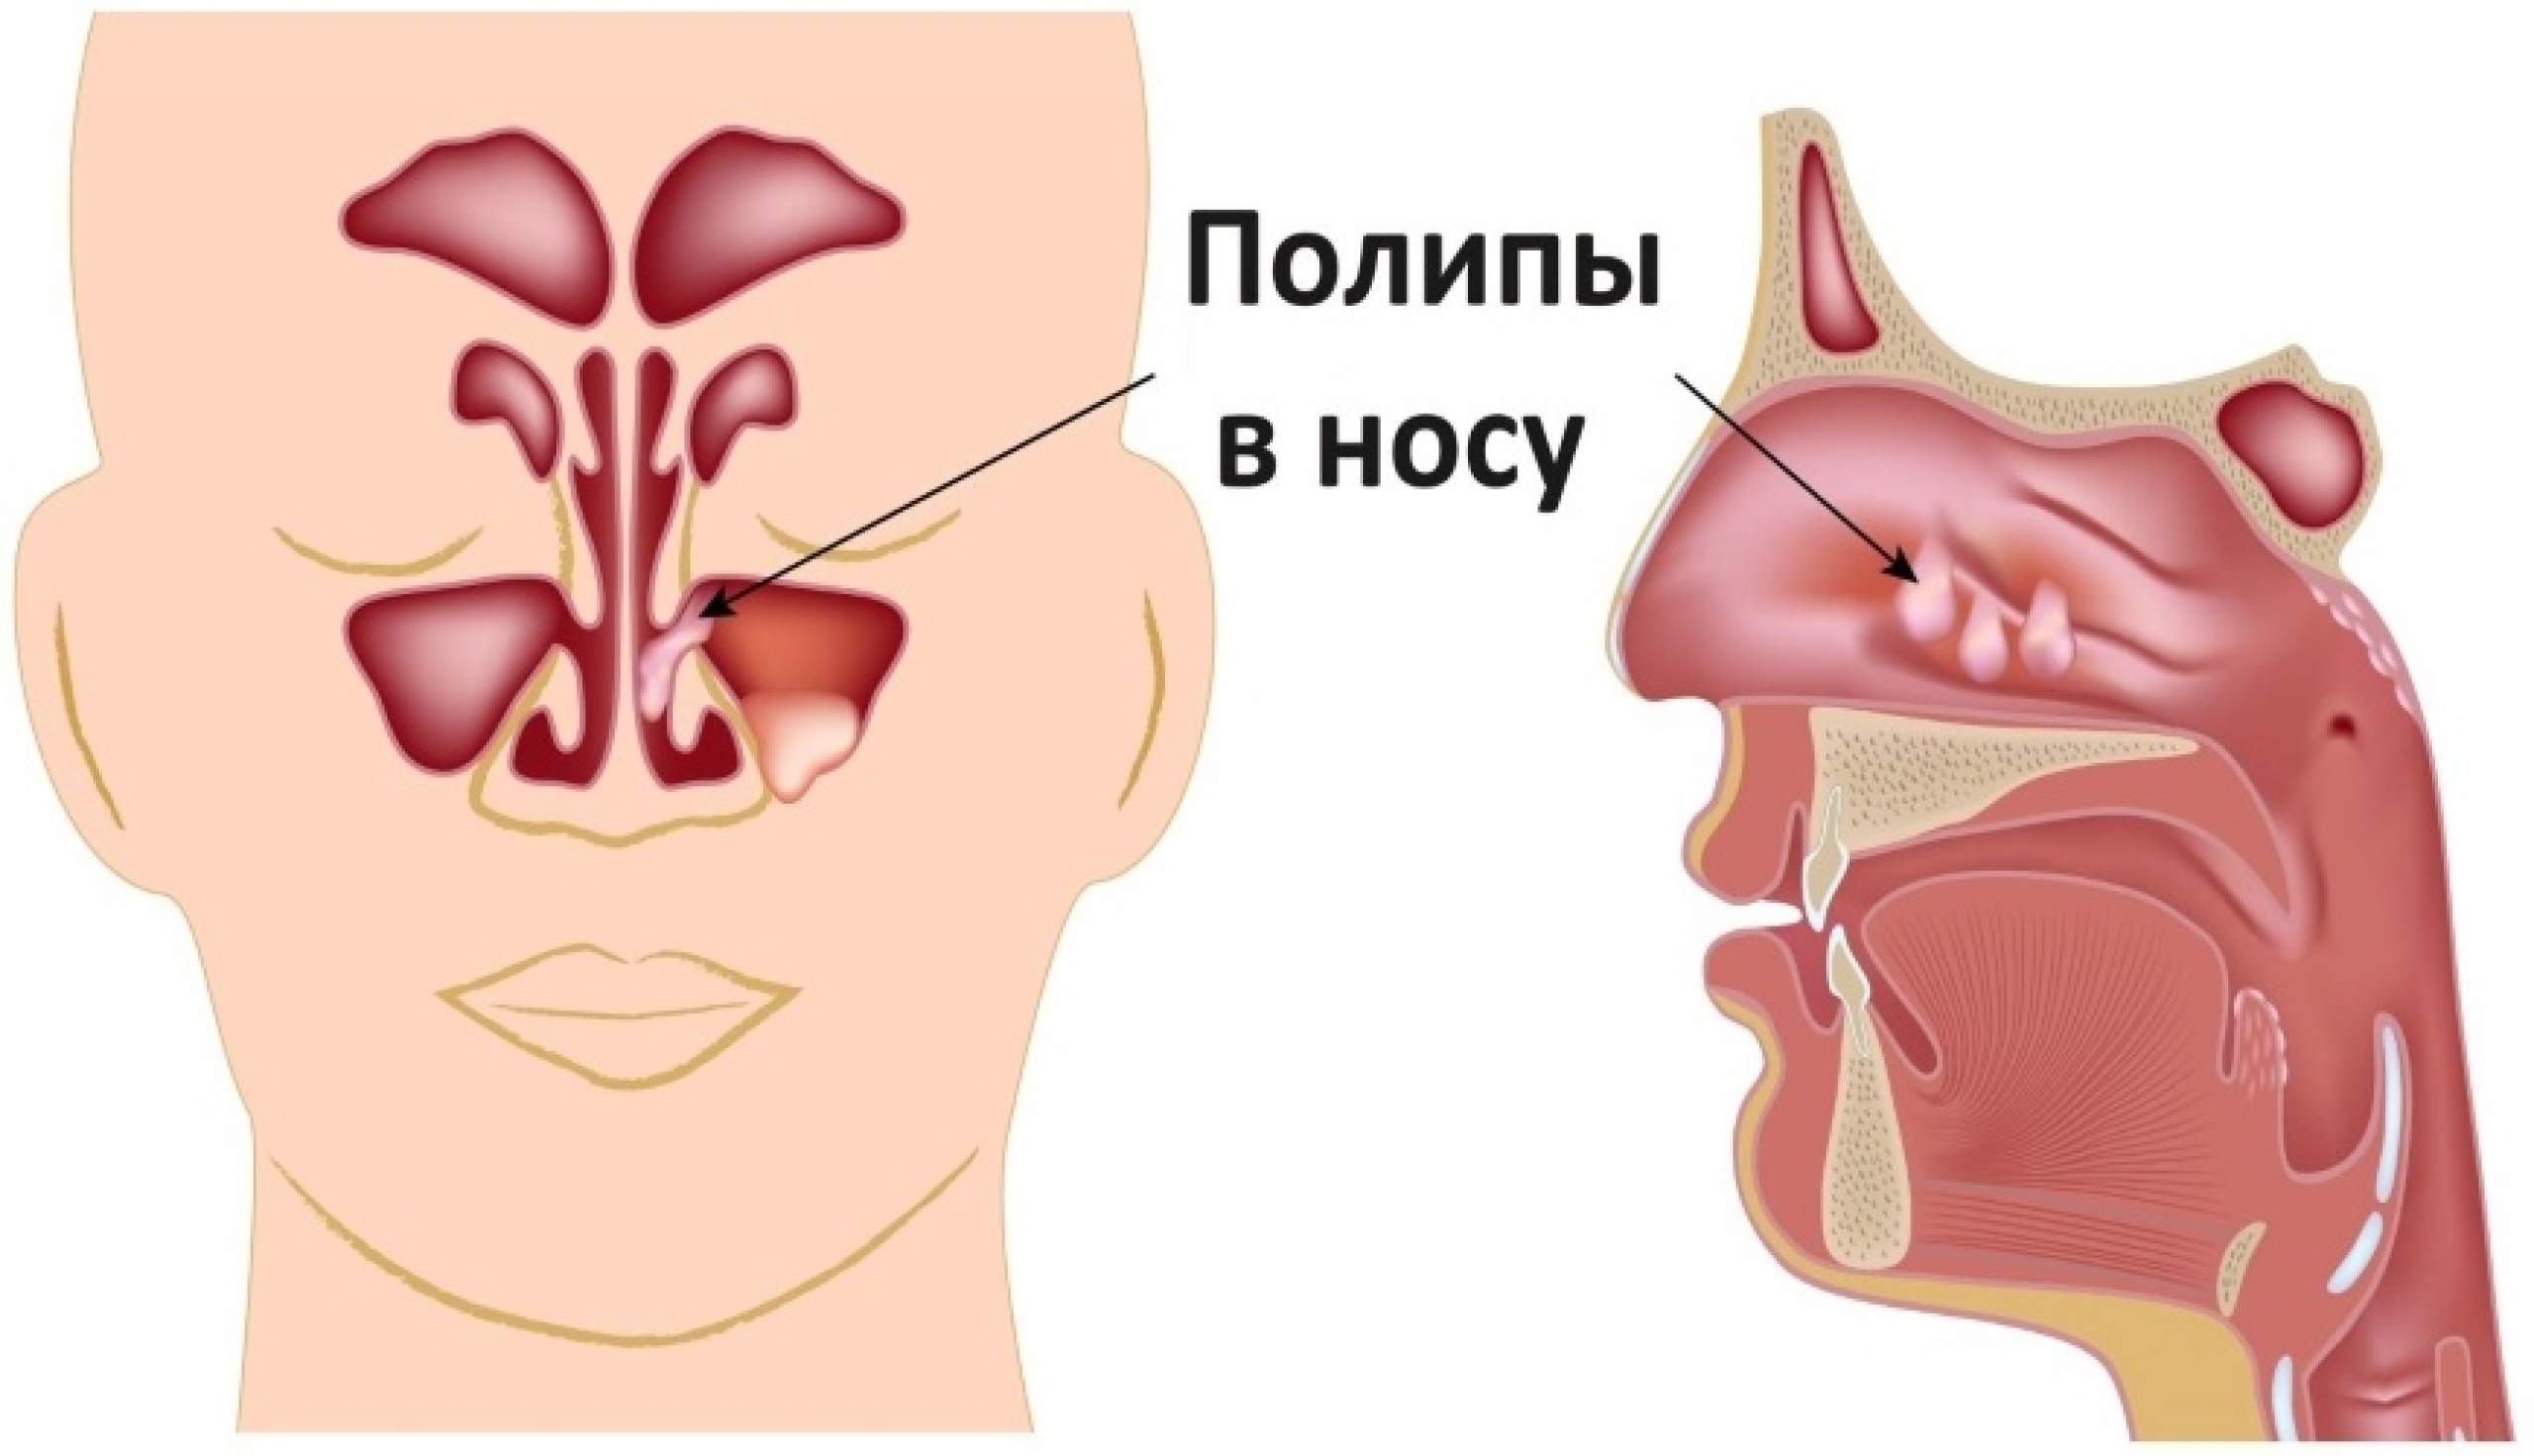 Способы лечения полипов в носу